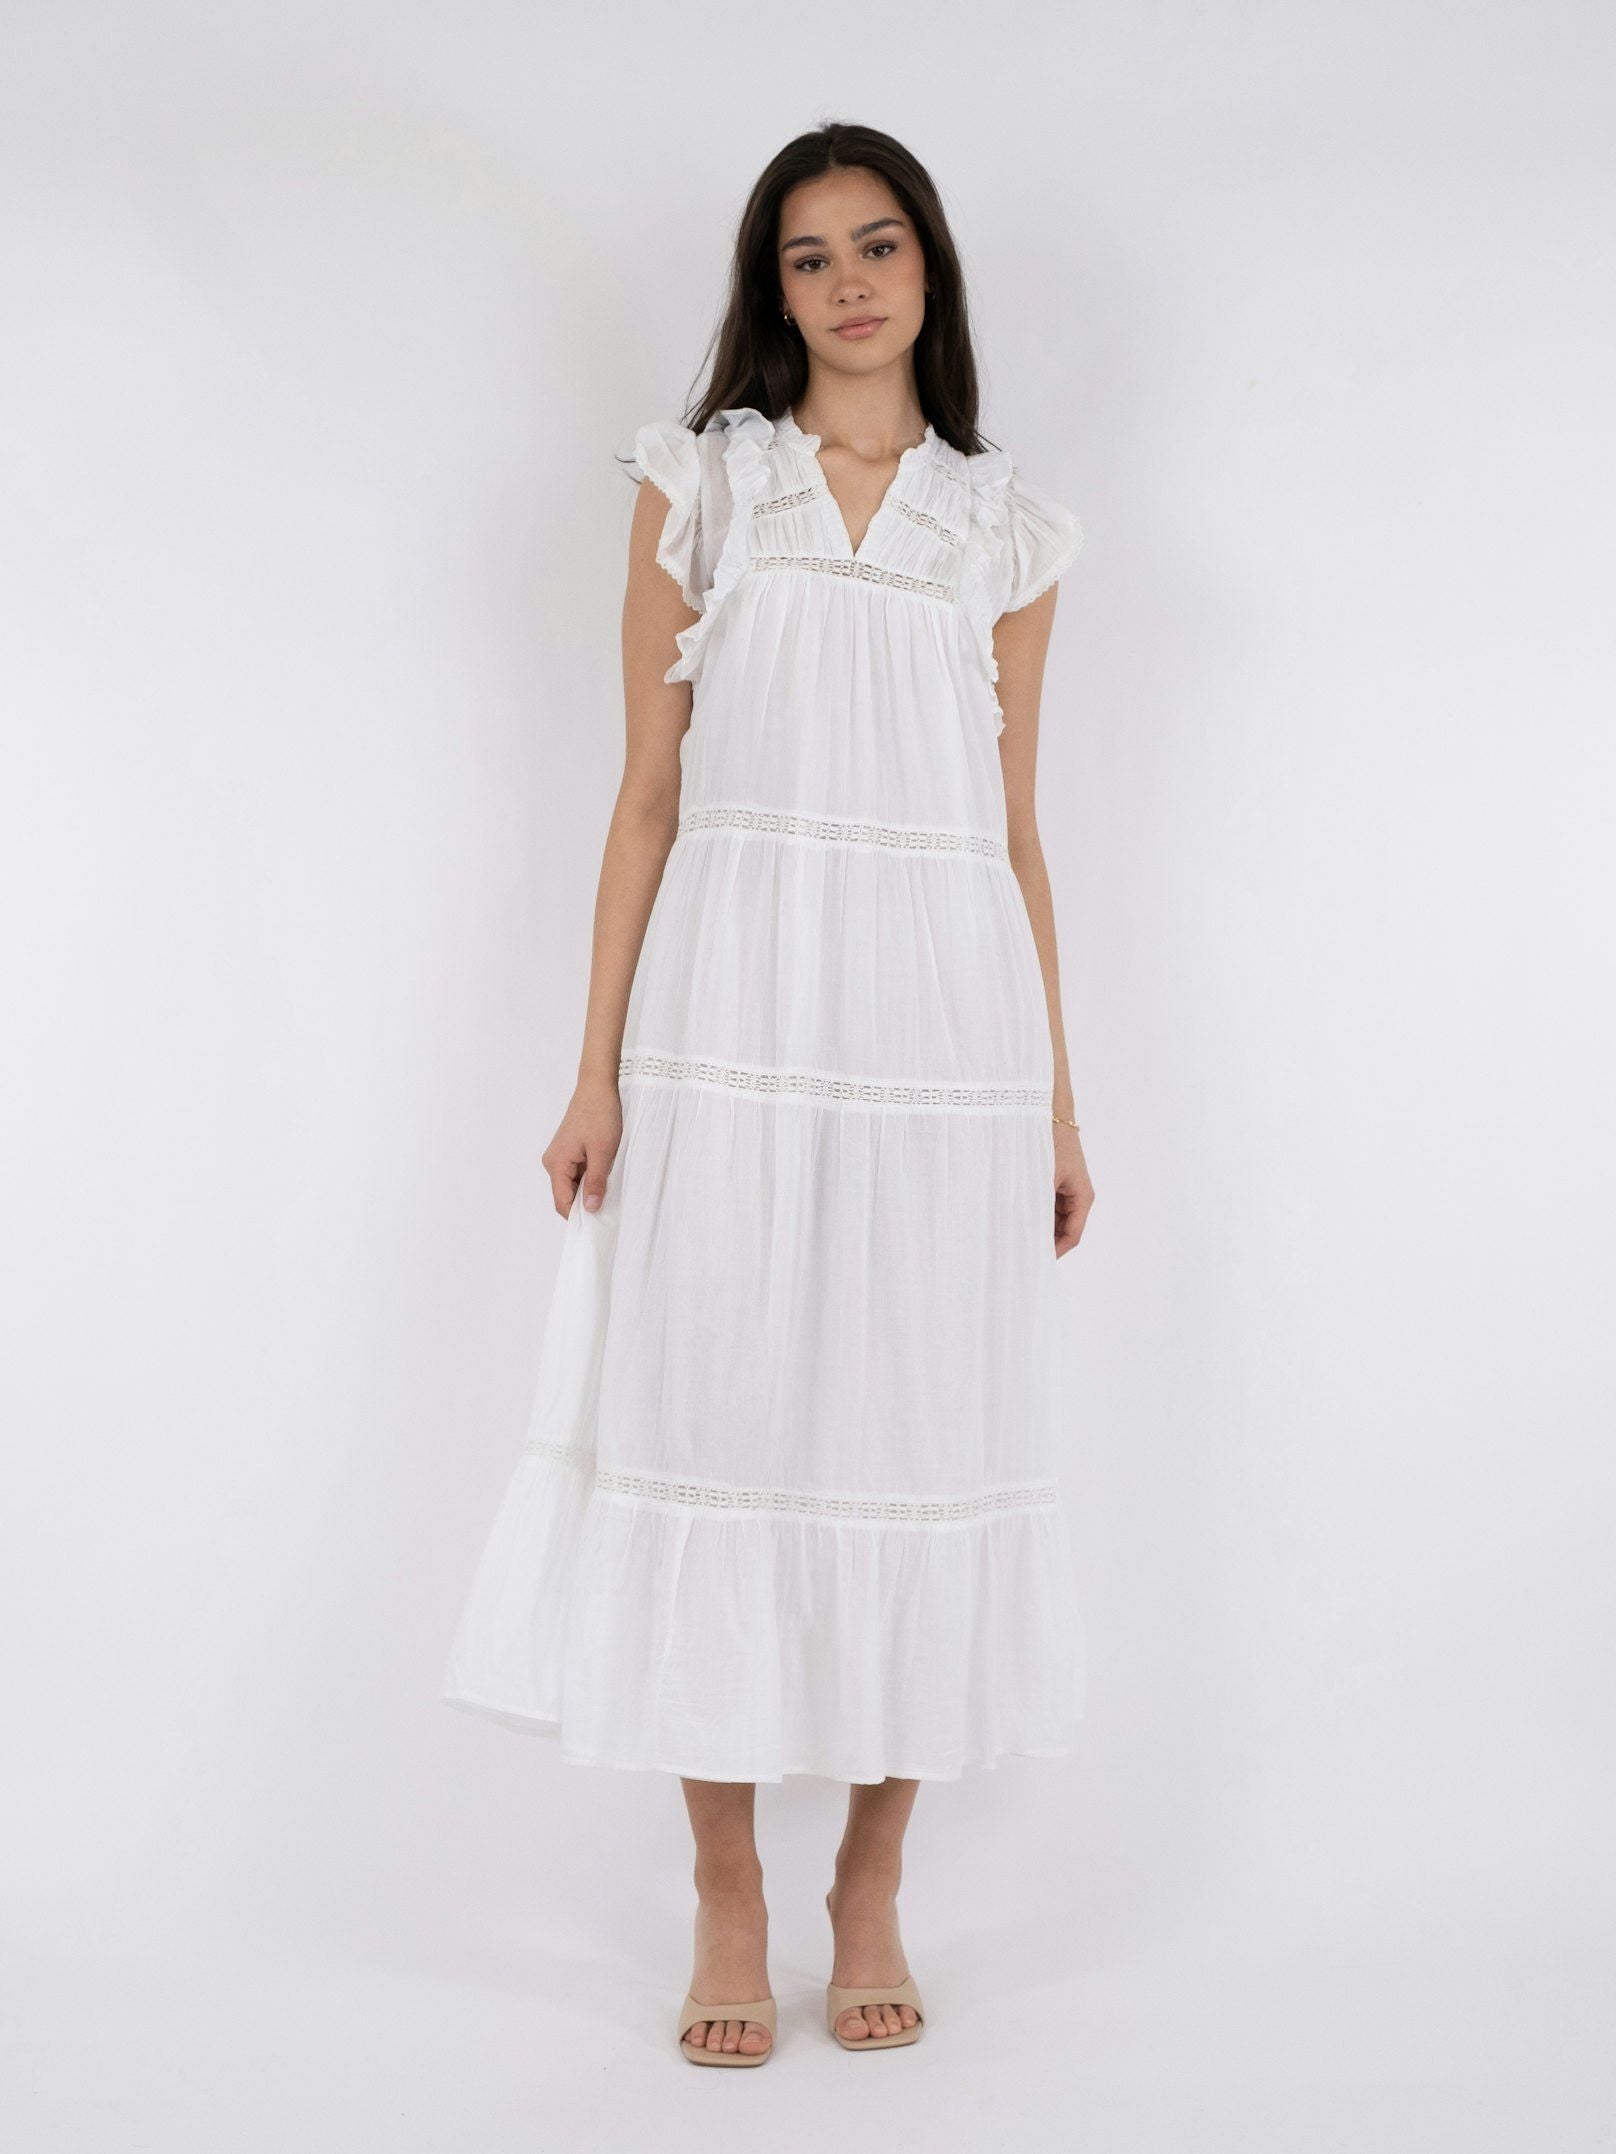 Ankita S Voile Dress - White